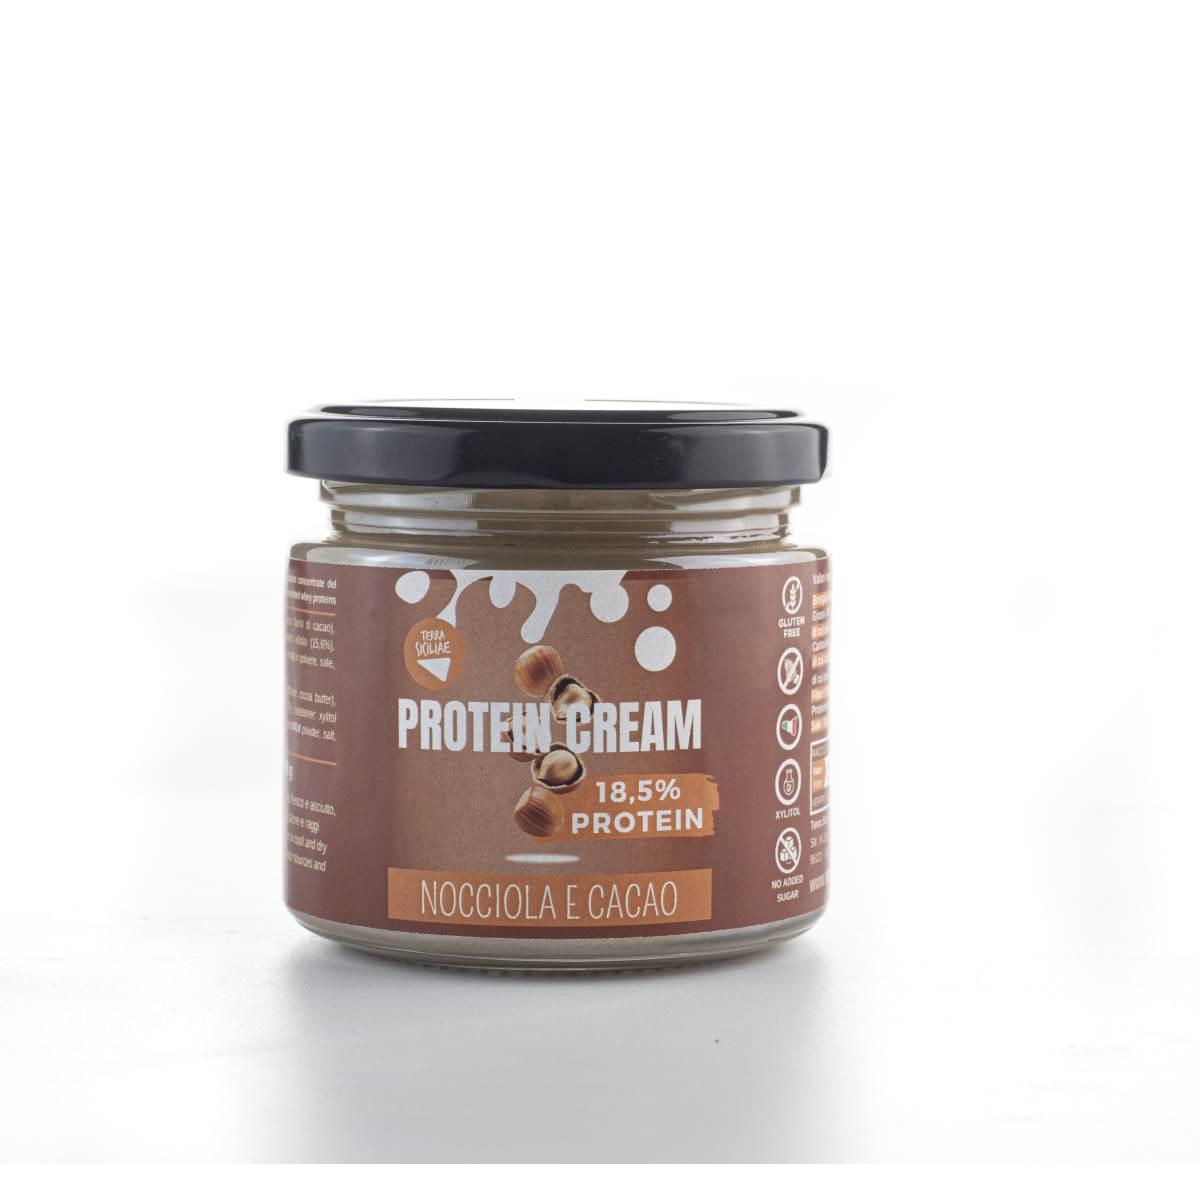 Protein Cream Nocciola e Cacao, 190g